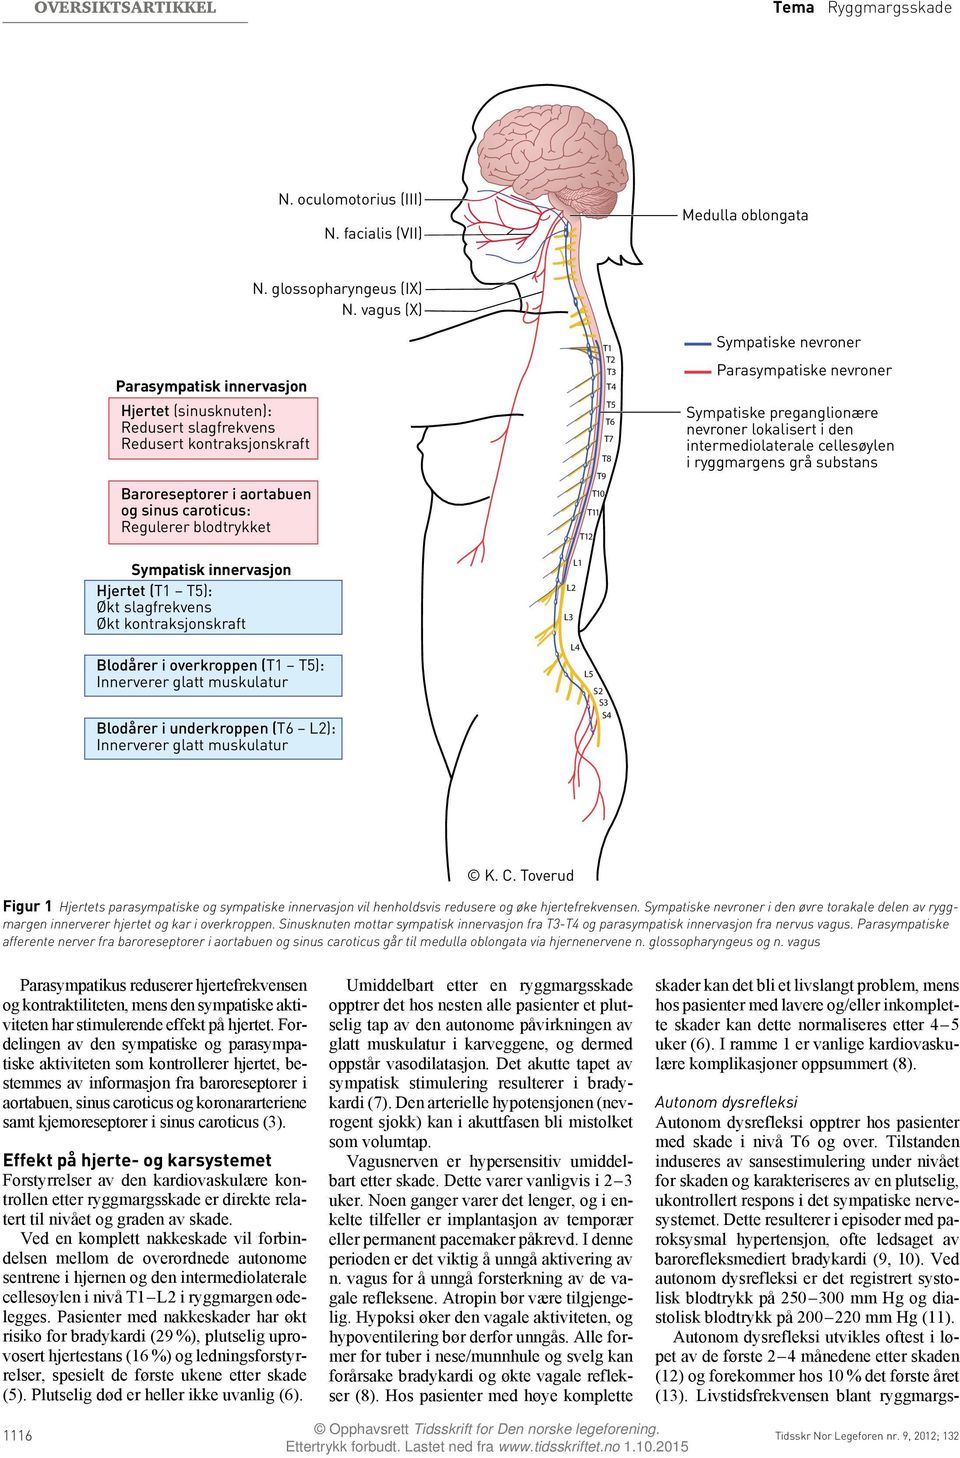 Sympatisk innervasjon Hjertet (T1 T5): Økt slagfrekvens Økt kontraksjonskraft Blodårer i overkroppen (T1 T5): Innerverer glatt muskulatur Blodårer i underkroppen (T6 L2): Innerverer glatt muskulatur